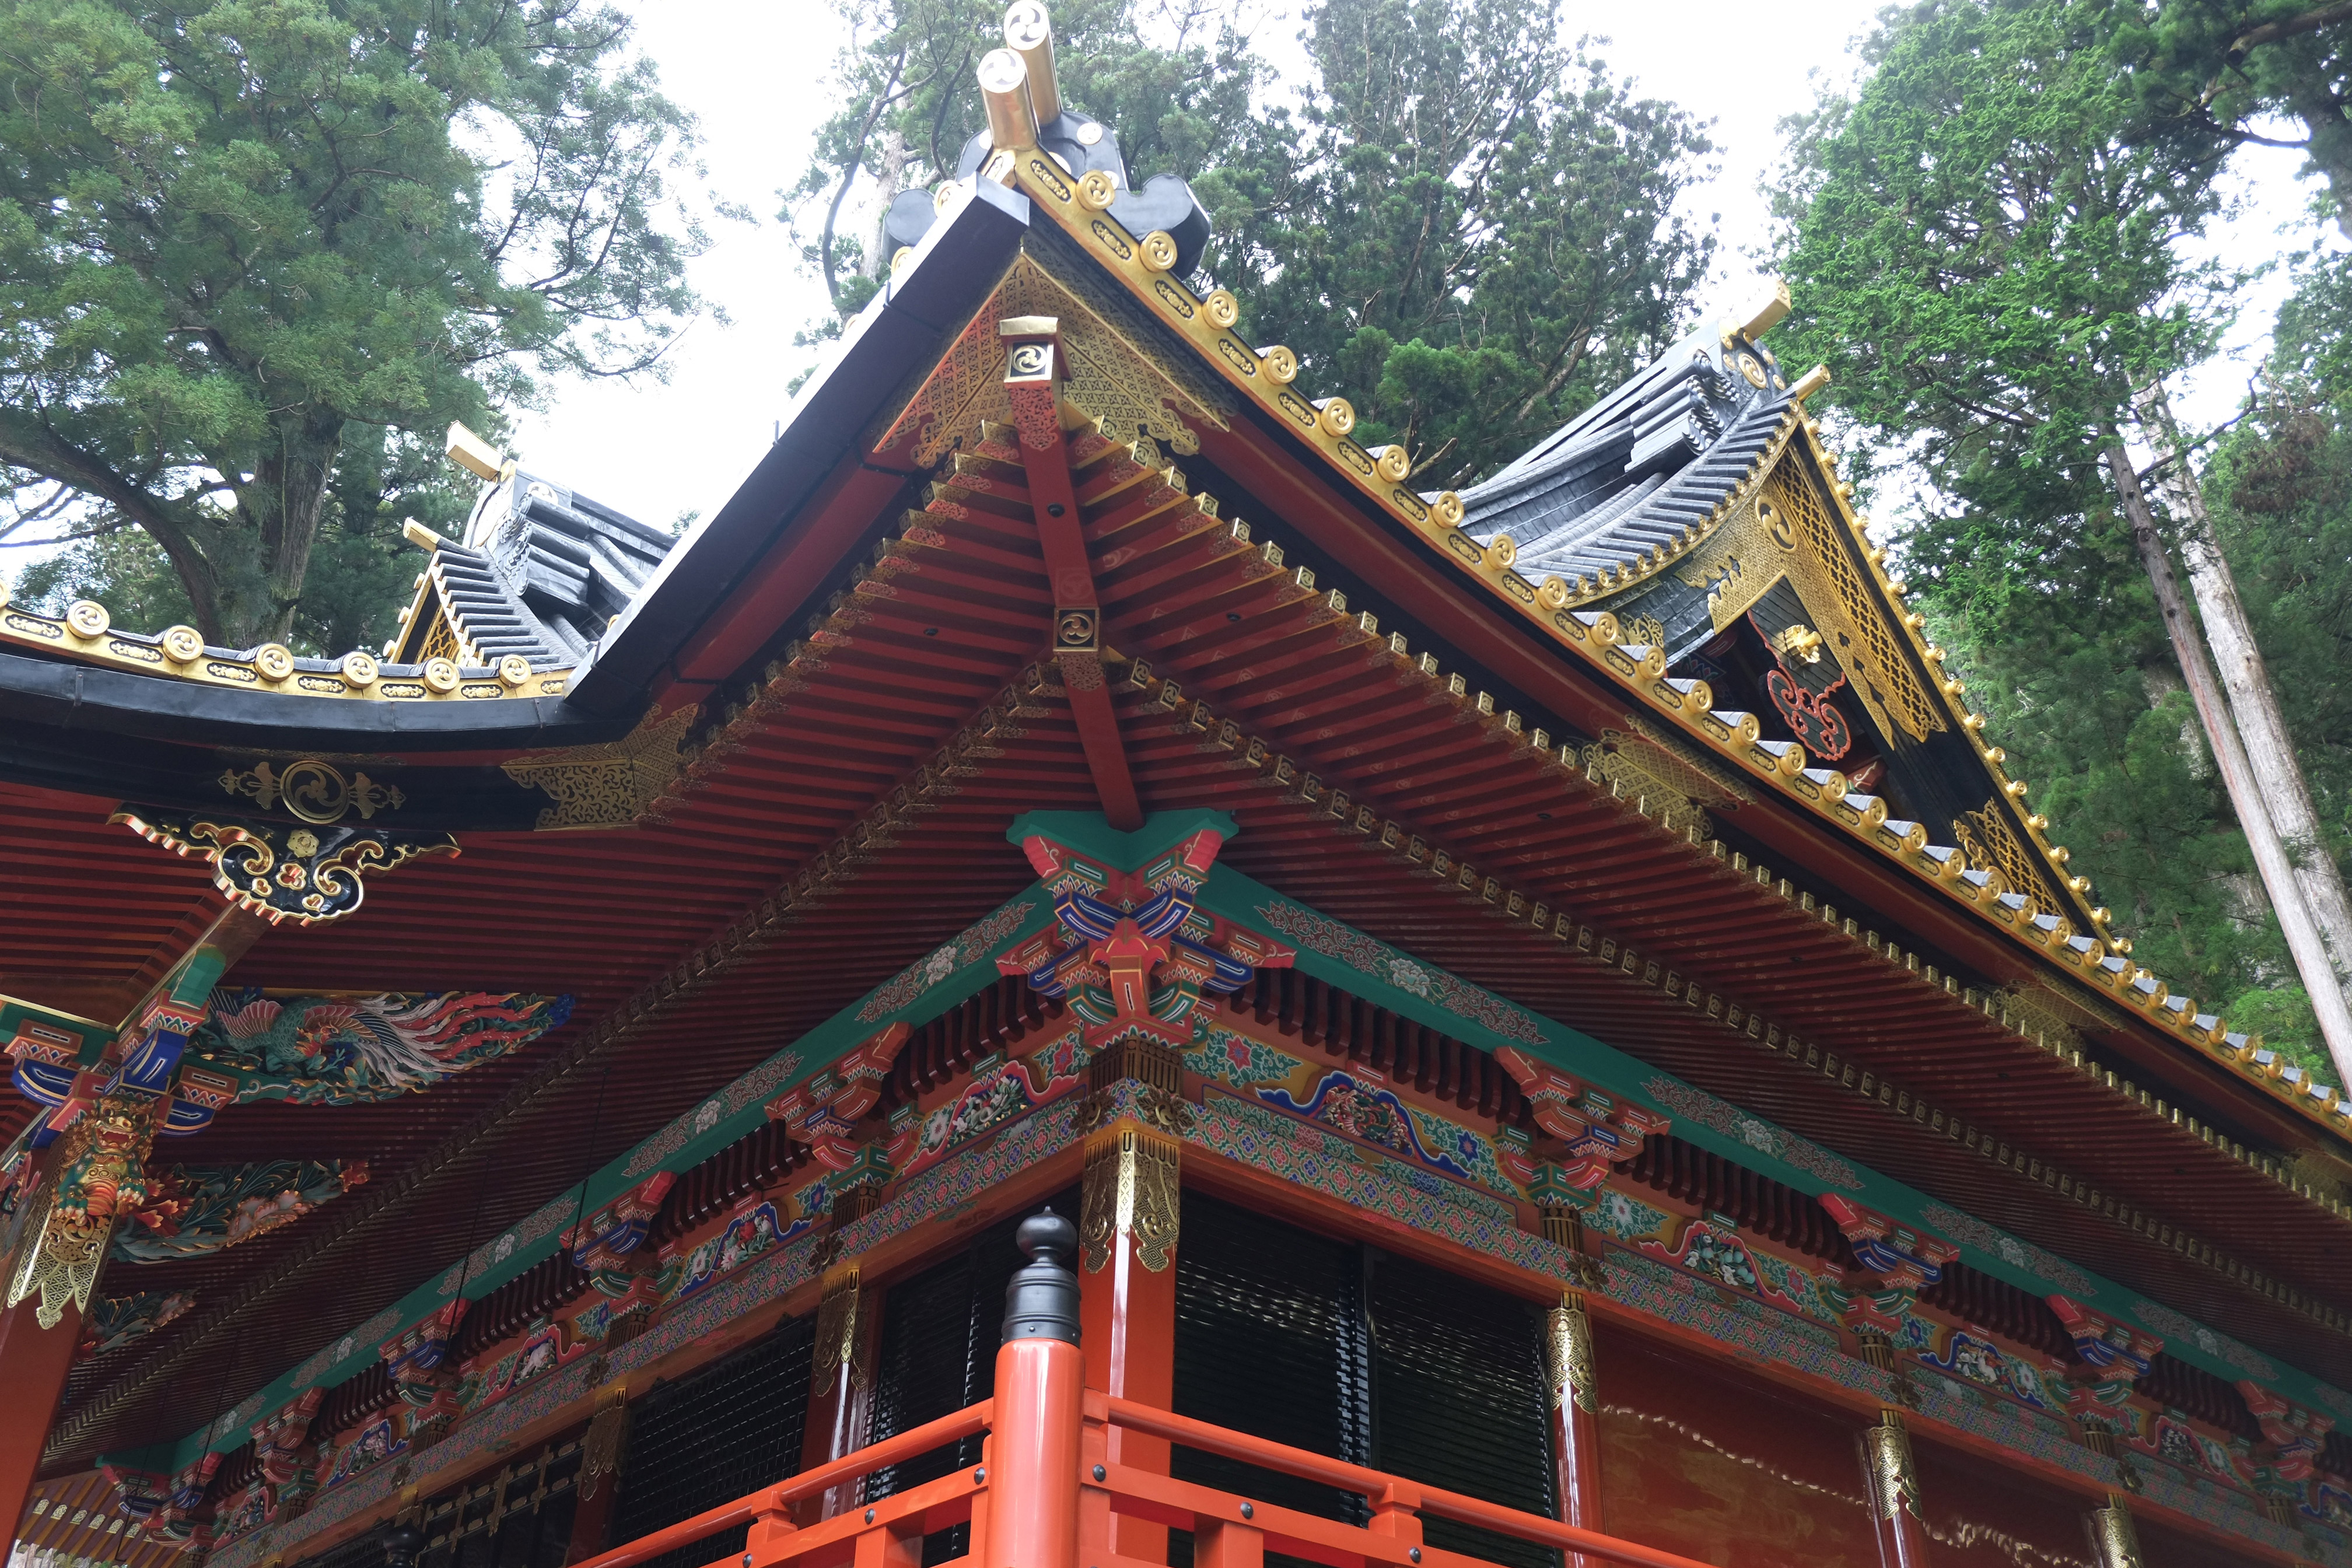 二荒山神社是日本最古老的神社之一，它的历史可以追溯到公元8世纪。由本社（主神社）、中宫祠、奥宫三部分组成。<br /><br />自古以来日光的男体山以及周围的群山作为神道圣地而广为人知。8世纪末，胜道上人（735年-817年）在男体山的山顶修建了祠堂，也就是现在的奥宫。在那之后，又在男体山山麓处，以及村落聚集处分别修建了中宫祠和二荒山神社本社。<br /><br />作为下野国（栃木县）规格最高的神社，二荒山神社一直深受当地百姓、武士和贵族的虔诚信仰所笃信。<br /><br />本殿供奉着大己貴神、田心姬神、味耜高彦根神三位神明，分别被认为是日光三山（男体山、女峰山、太郎山）的化身。<br /><br />拜殿<br />拜殿是进行祈祷的场所，有时祭典也会在这里举行。建筑内红黑相间的装饰，简约素朴而又充满力量。这里的武士像保护着本殿中供奉的神明，壁画则<br />绘有神明的使者——鹿。这座建筑由德川幕府第二代将军德川秀忠（1579年-1632年）于1619年捐建。<br /><br />本殿<br />本殿和拜殿由回廊连为一体，供奉着大己贵神（大国主神）、田心姬神（宗像女神多纪理姬子）、味耜高彦根神三位神明，是由1603年到1867年之间统治过日本的德川幕府第二代将军德川秀忠捐建而成。